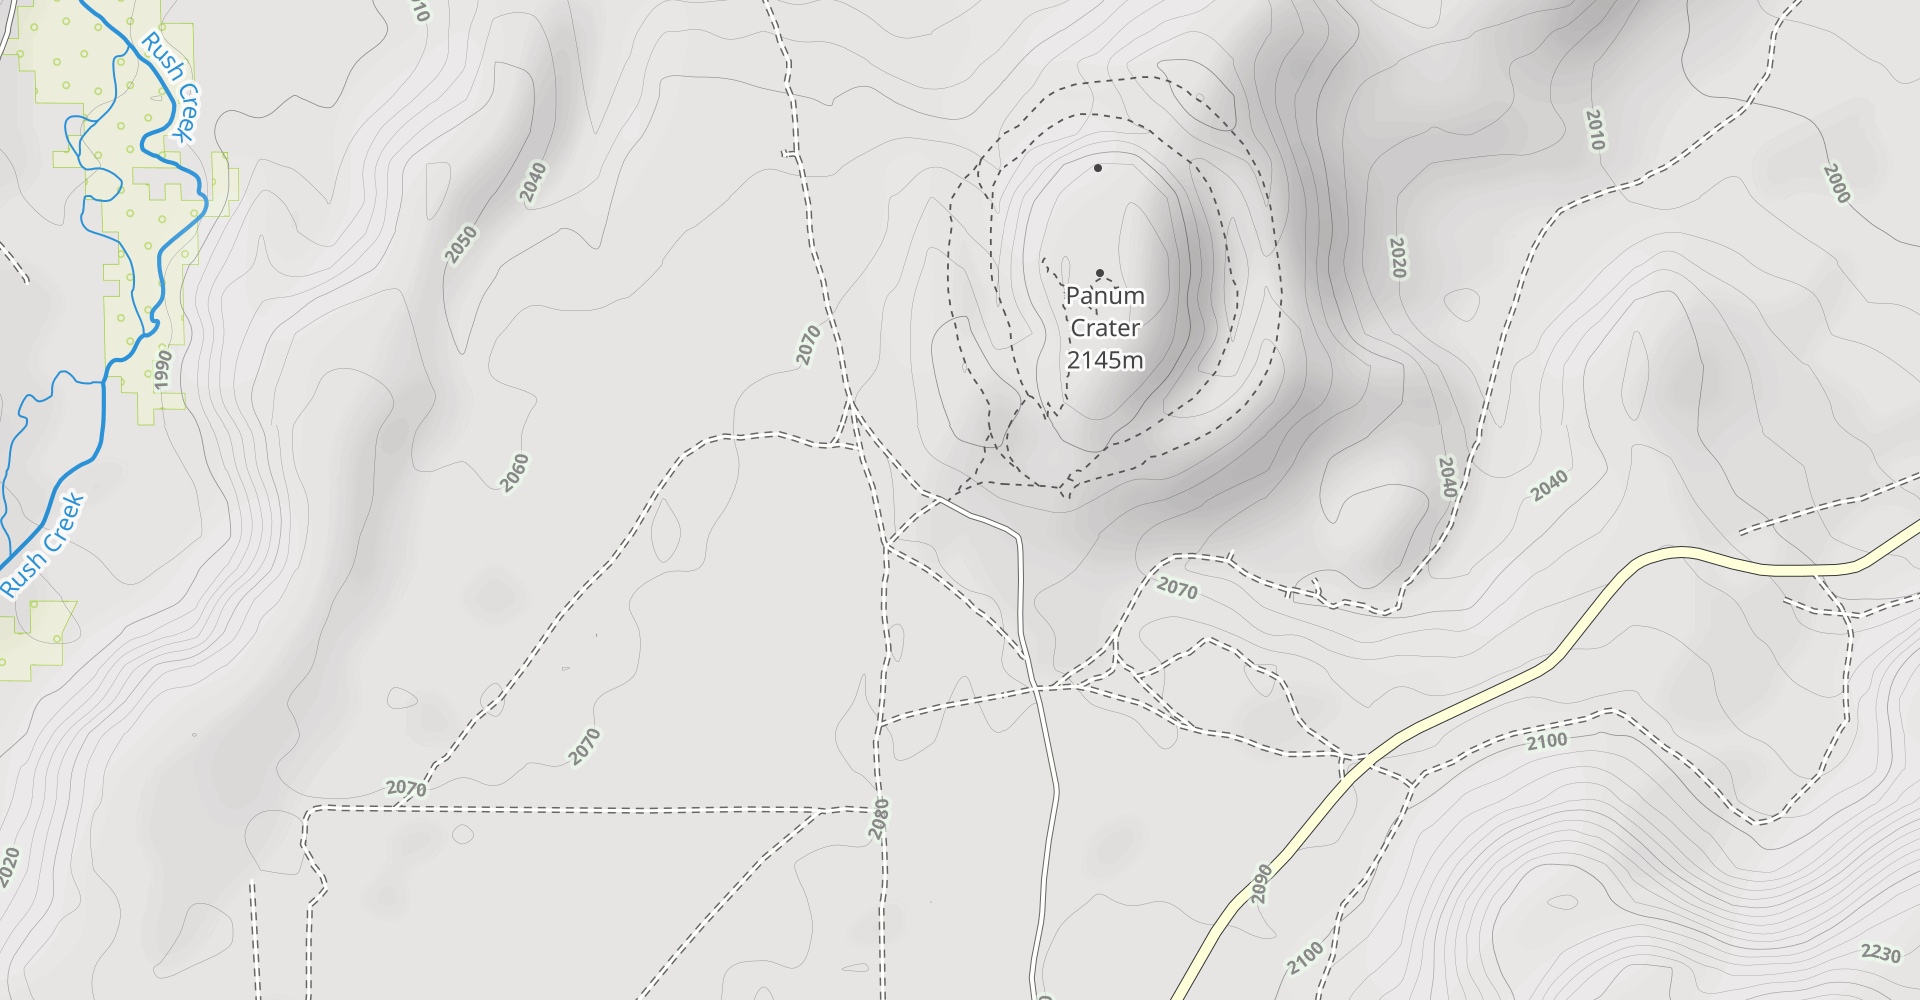 Panum Crater Summit